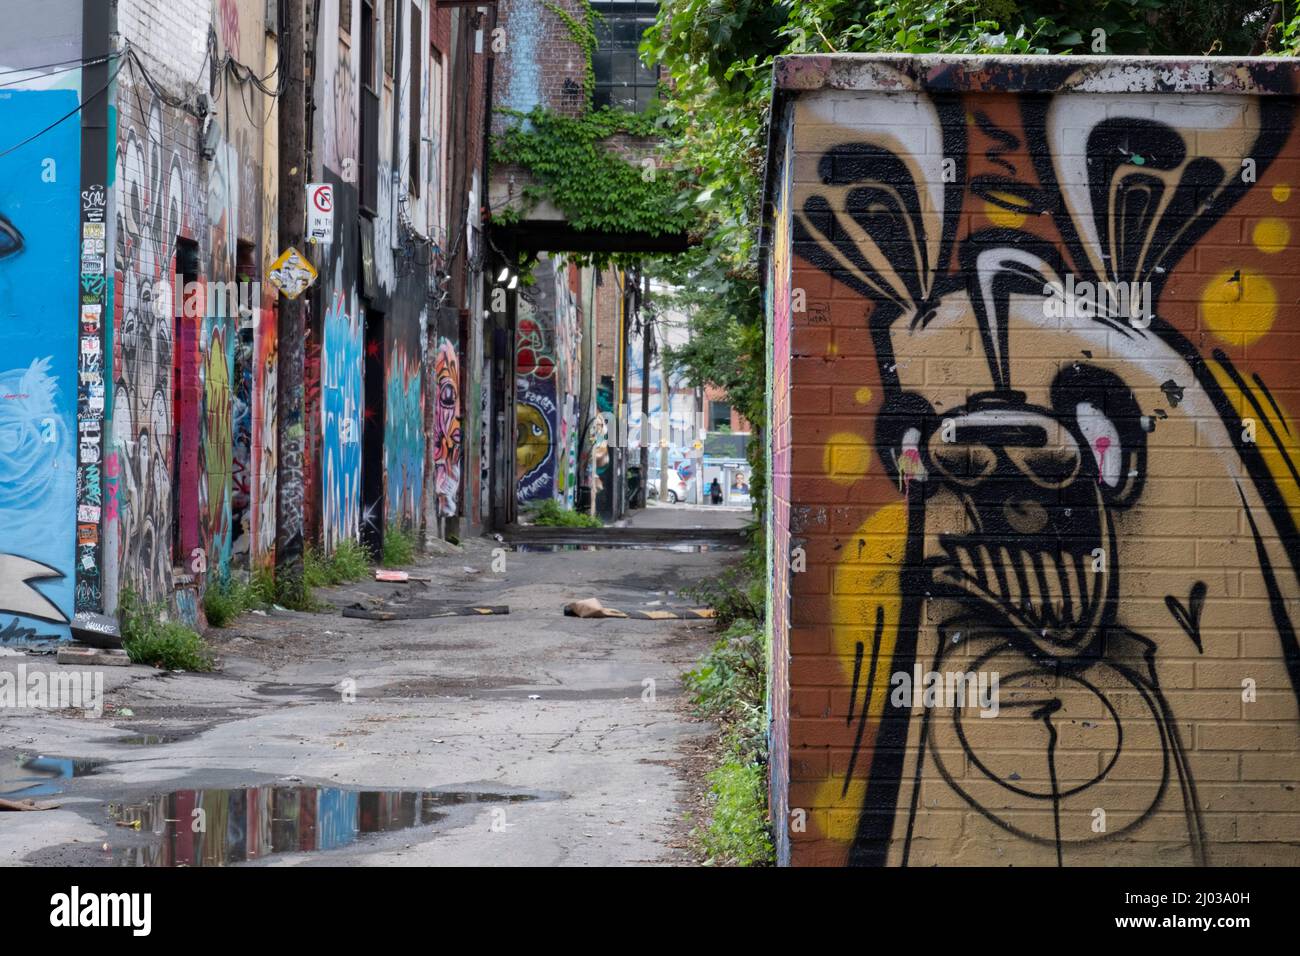 L'infâme Graffiti Alley de Toronto dans le quartier de la mode, Toronto, Ontario, Canada, Amérique du Nord Banque D'Images